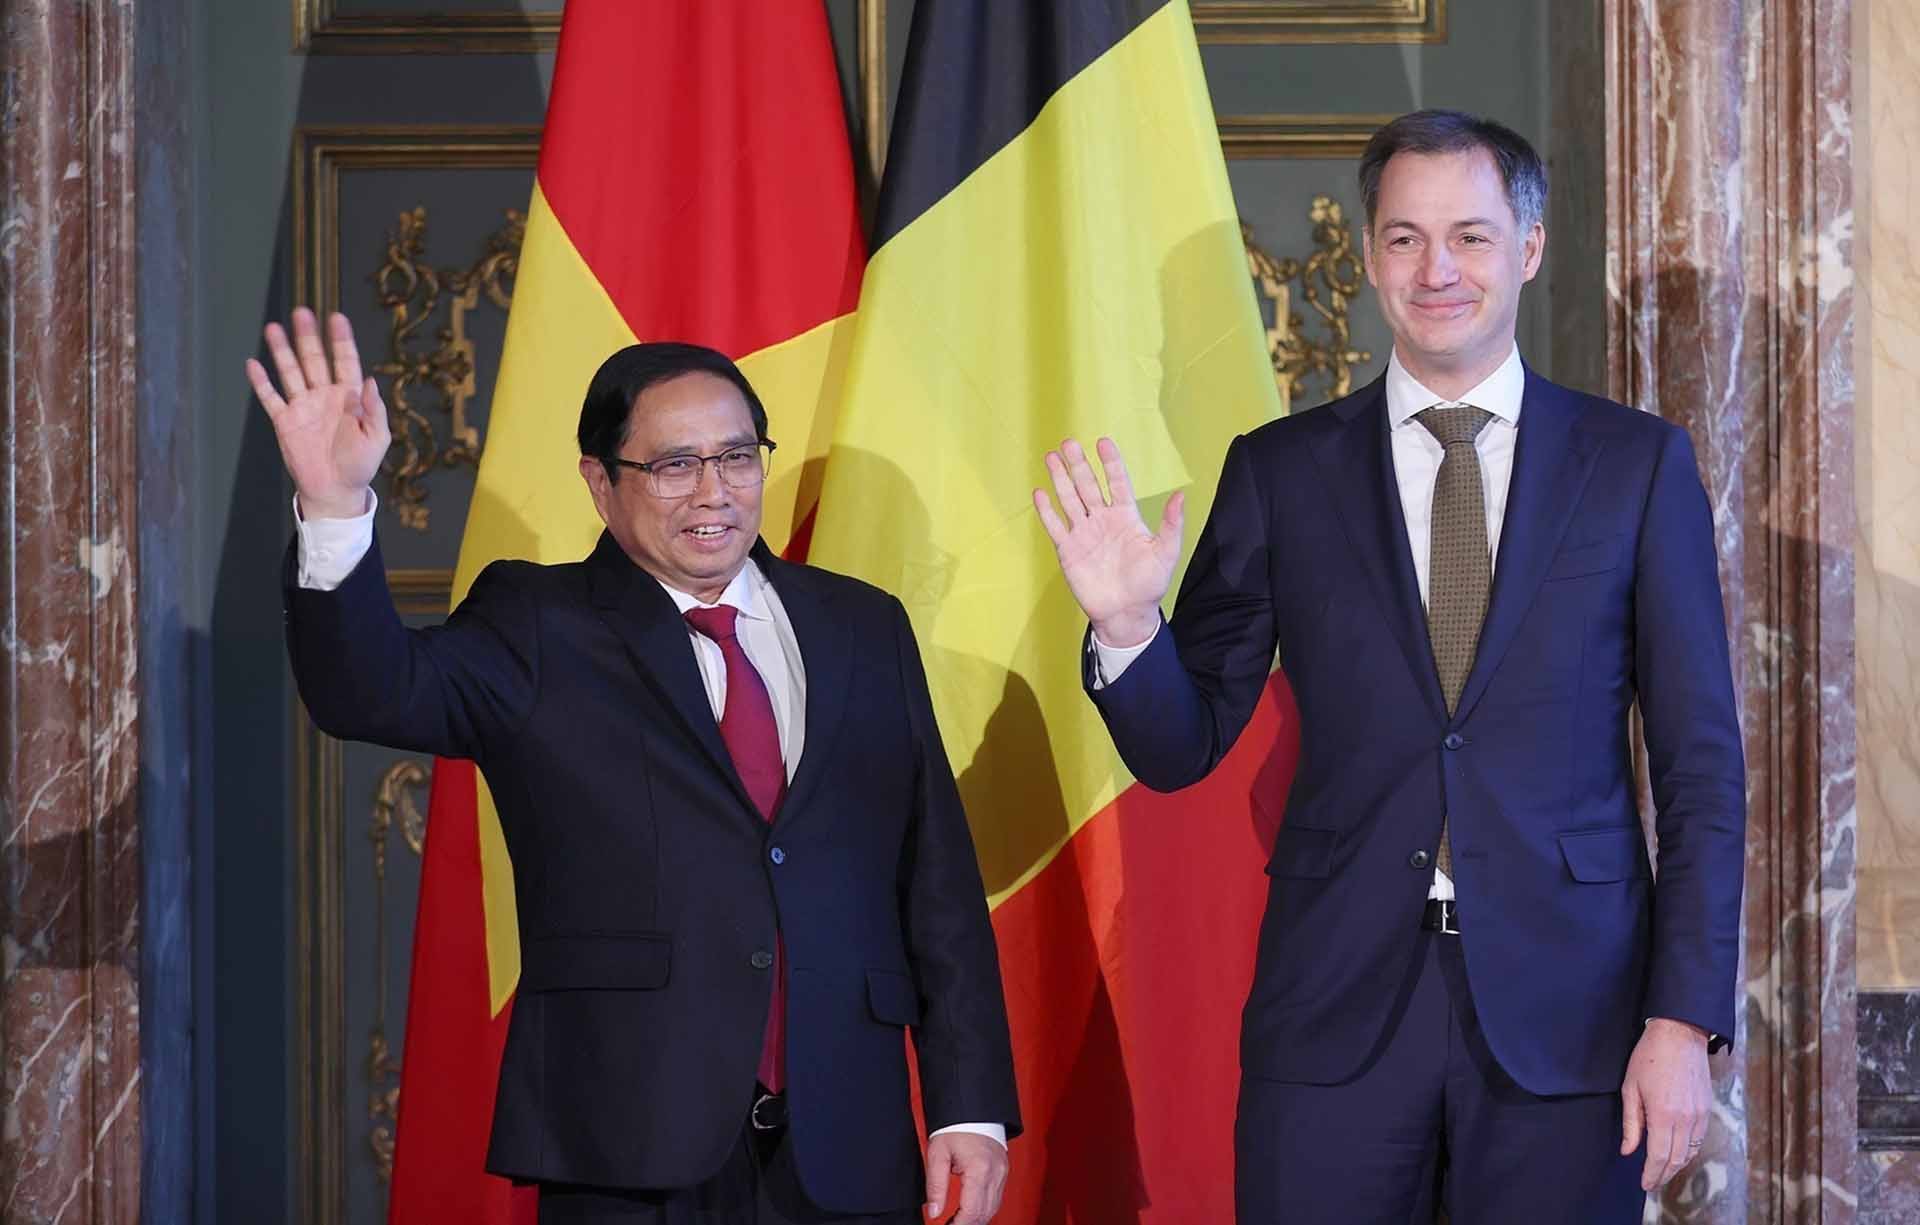 Thủ tướng Chính phủ Phạm Minh Chính và Thủ tướng Vương quốc Bỉ Alexander De Croo. (Nguồn: TTXVN)